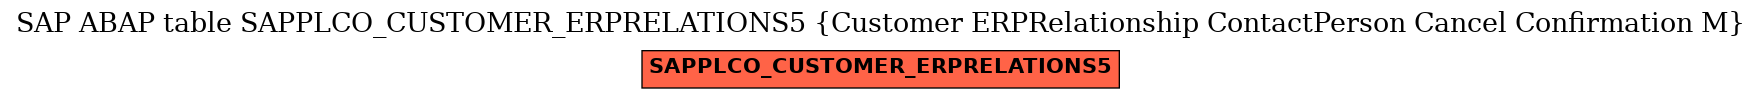 E-R Diagram for table SAPPLCO_CUSTOMER_ERPRELATIONS5 (Customer ERPRelationship ContactPerson Cancel Confirmation M)